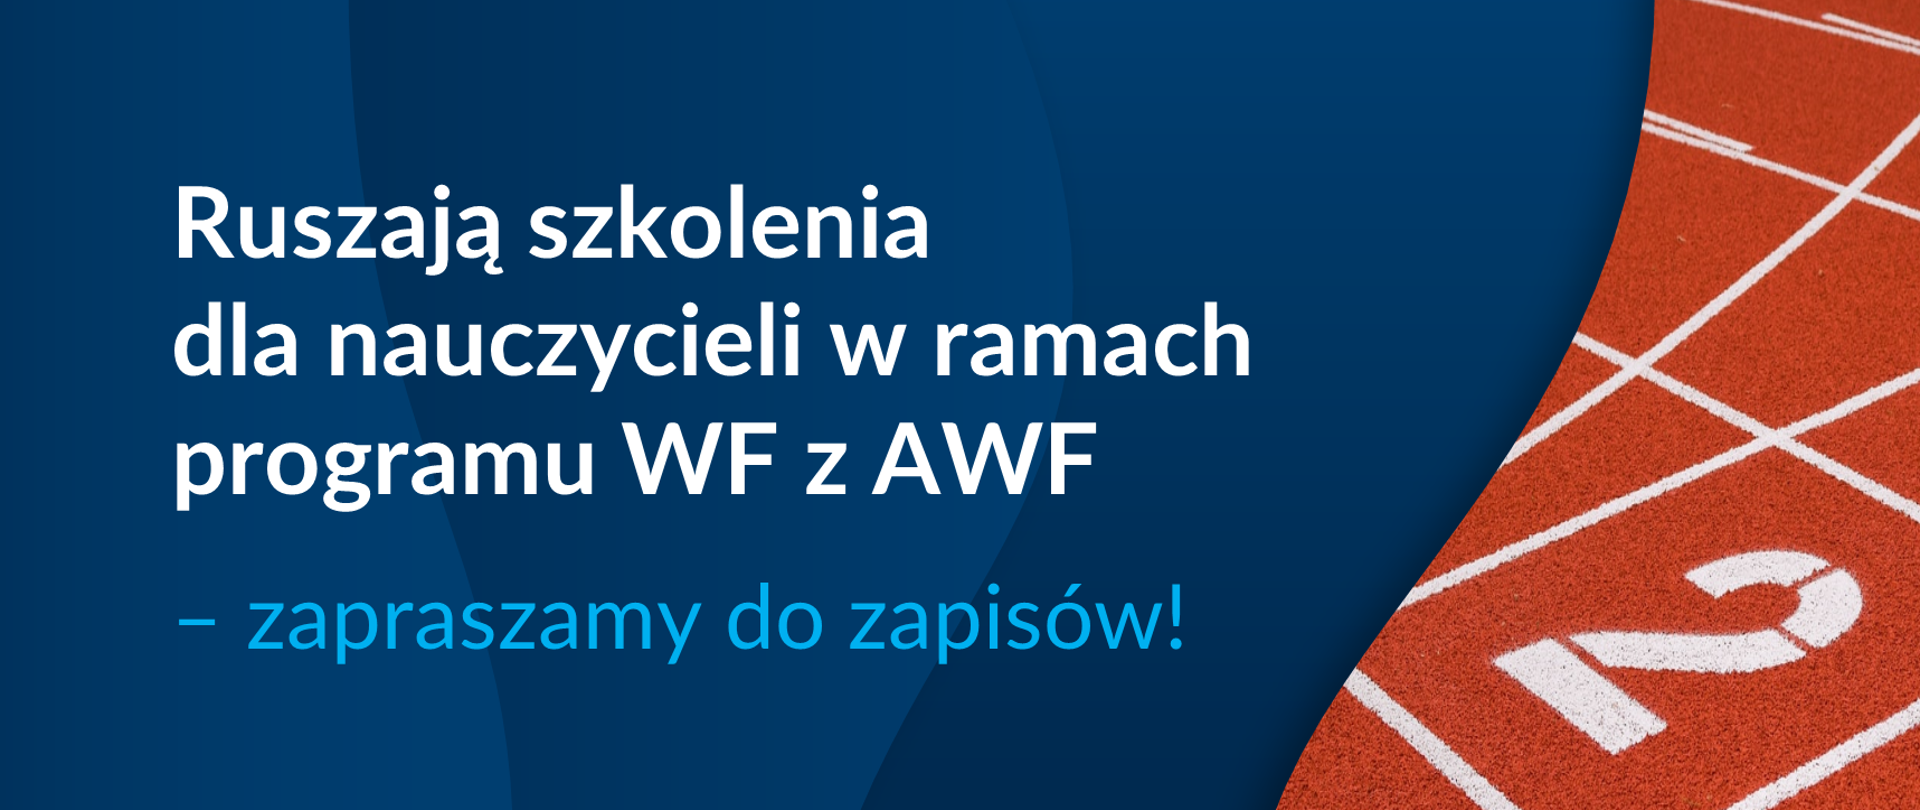 Grafika z tekstem: "Ruszają szkolenia dla nauczycieli w ramach programu WF z AWF"